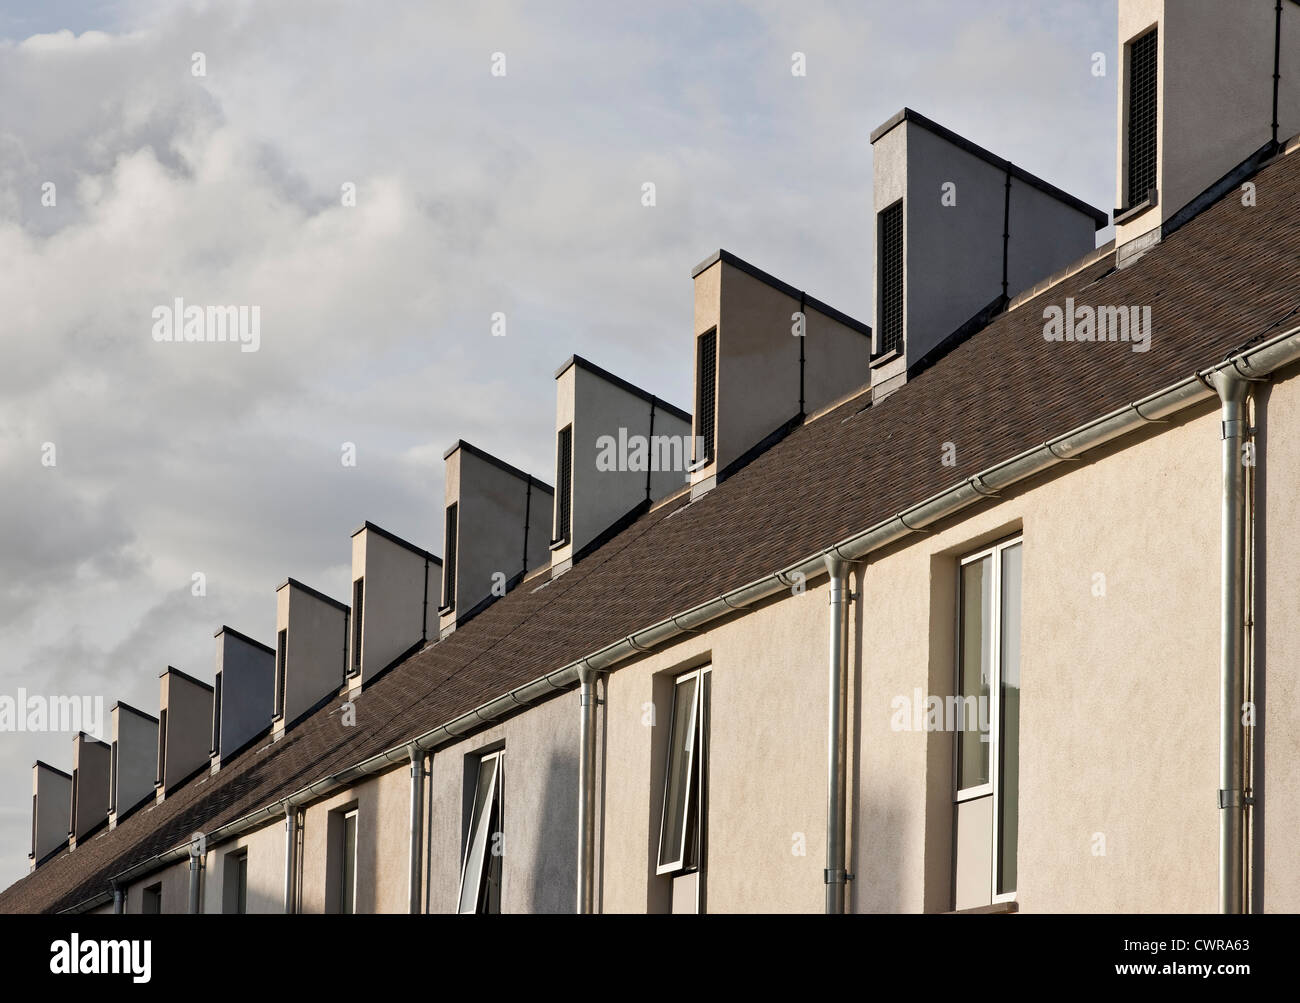 El triángulo del proyecto de vivienda en el centro de Swindon, que fue muy elogiado en el 2012 la confianza cívica premios Foto de stock